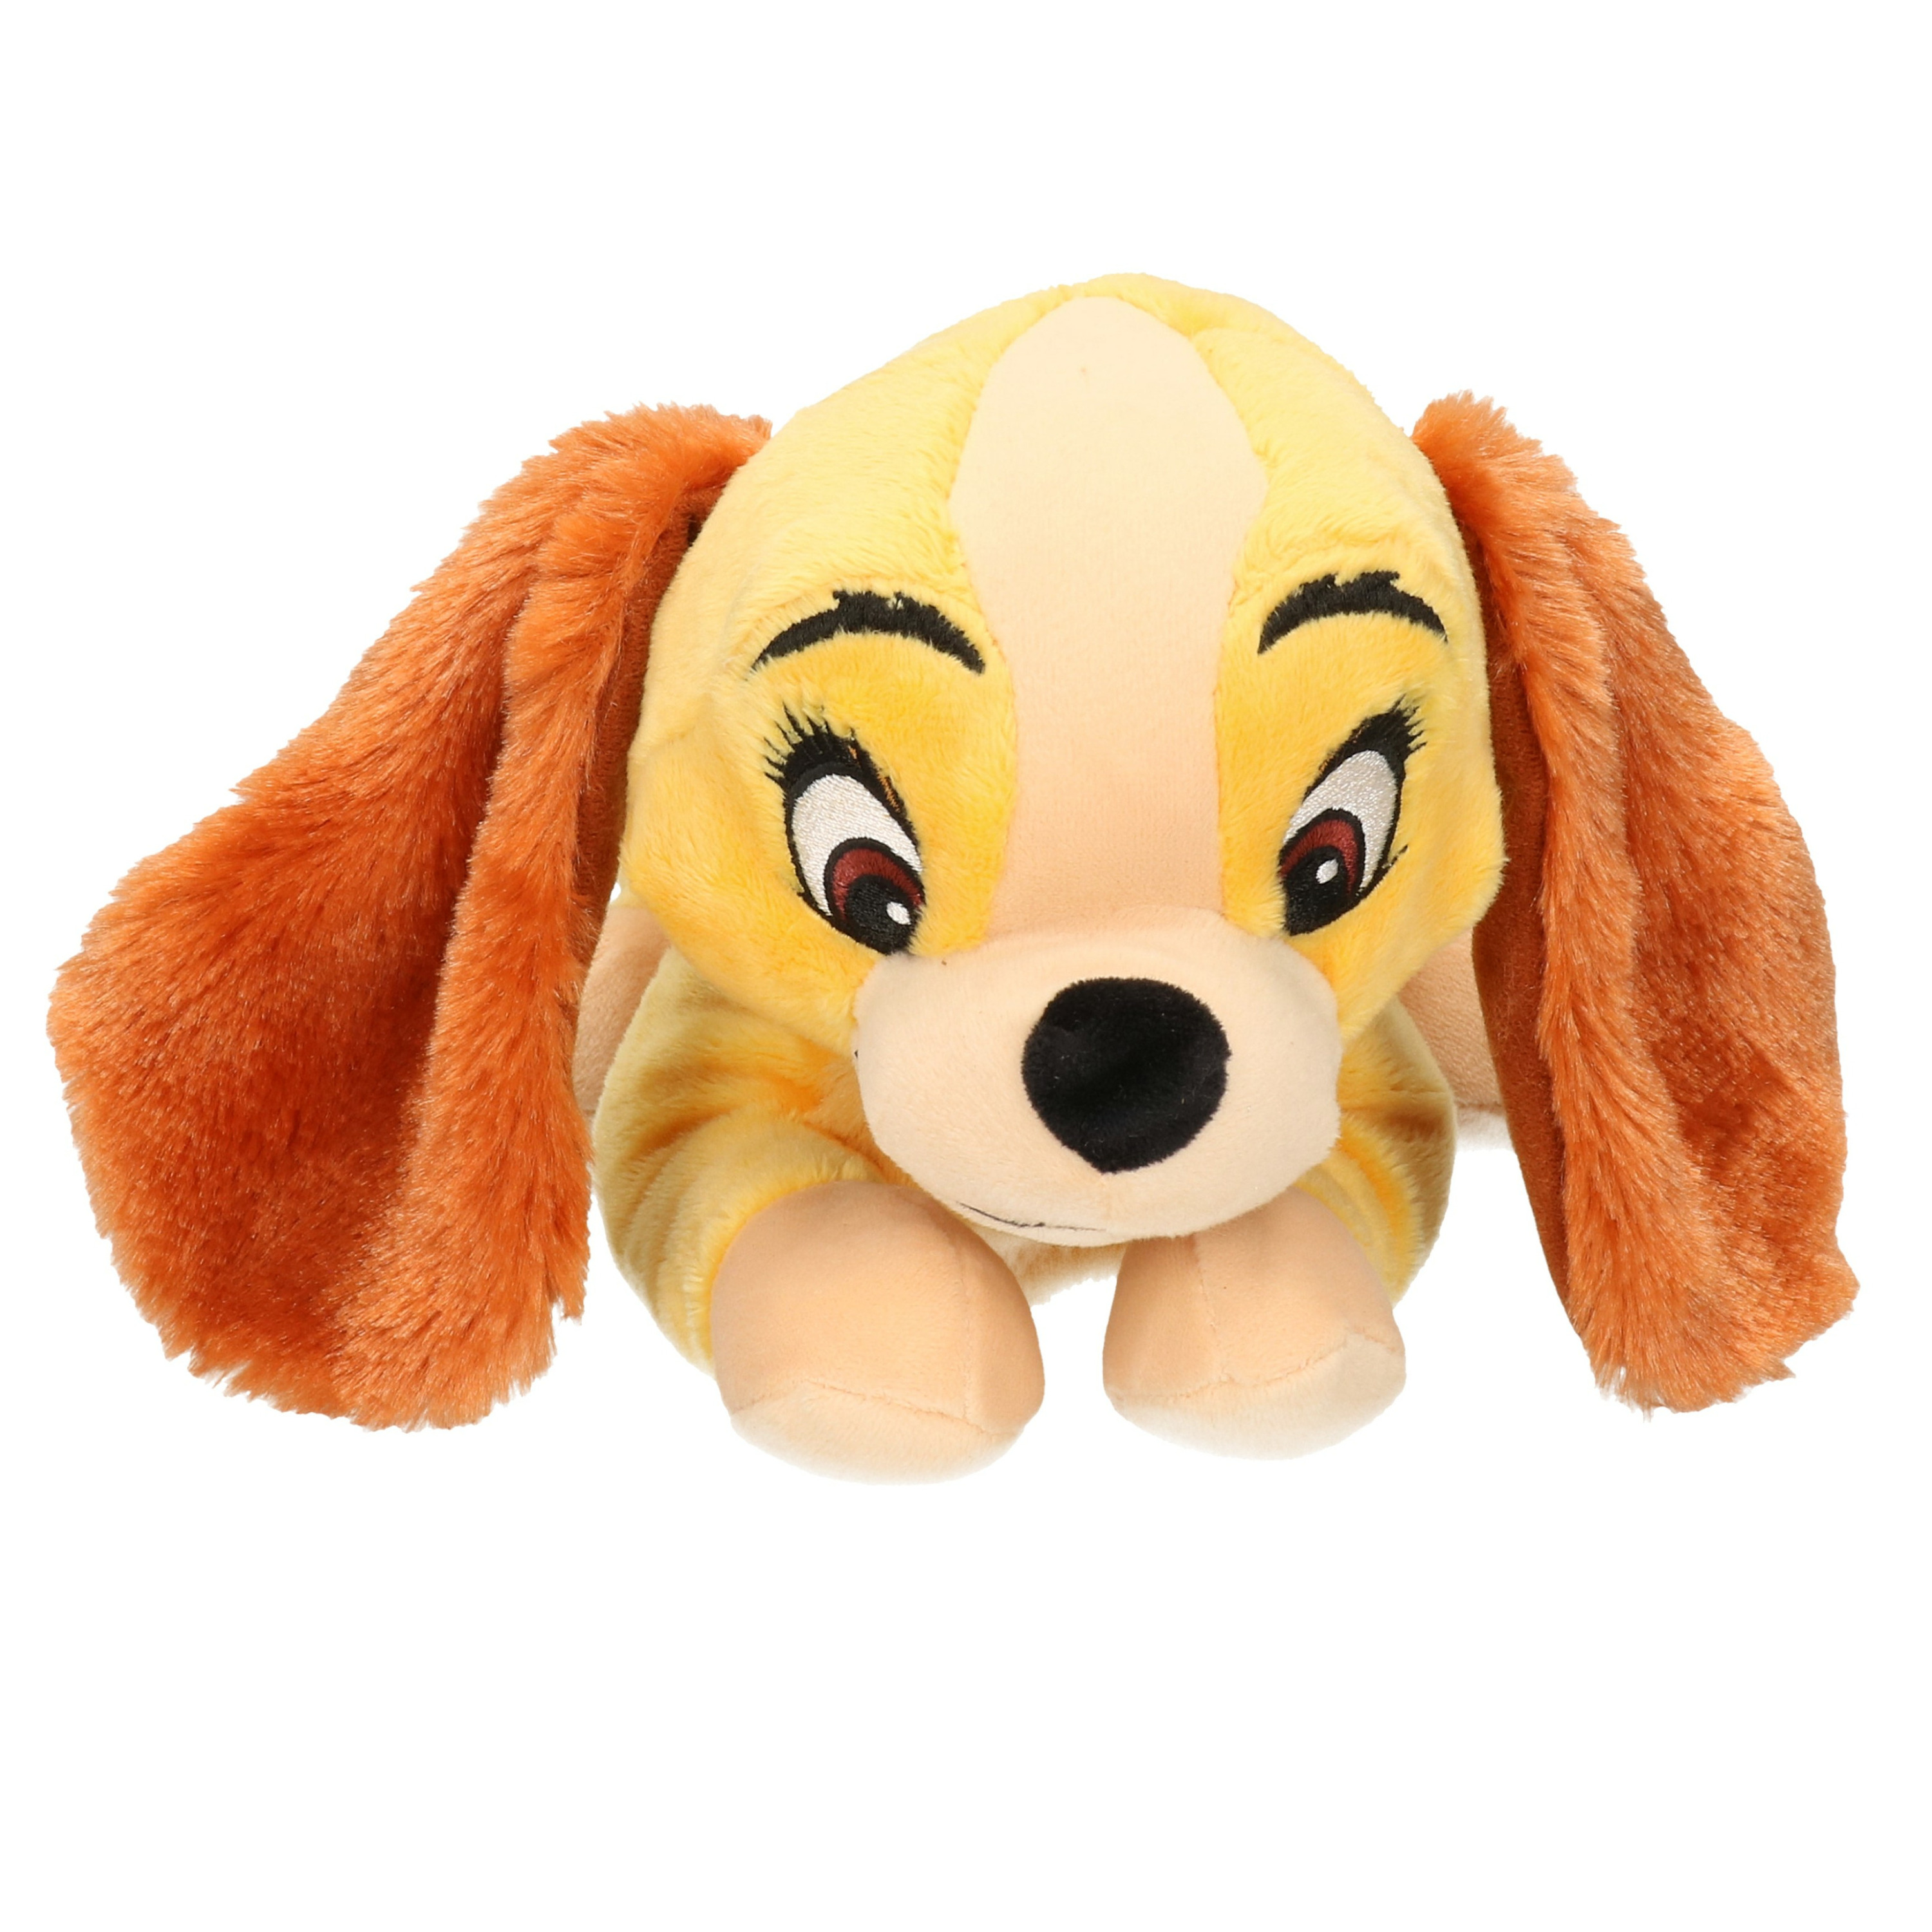 Knuffel Disney Lady hondje bruin 25 cm knuffels kopen